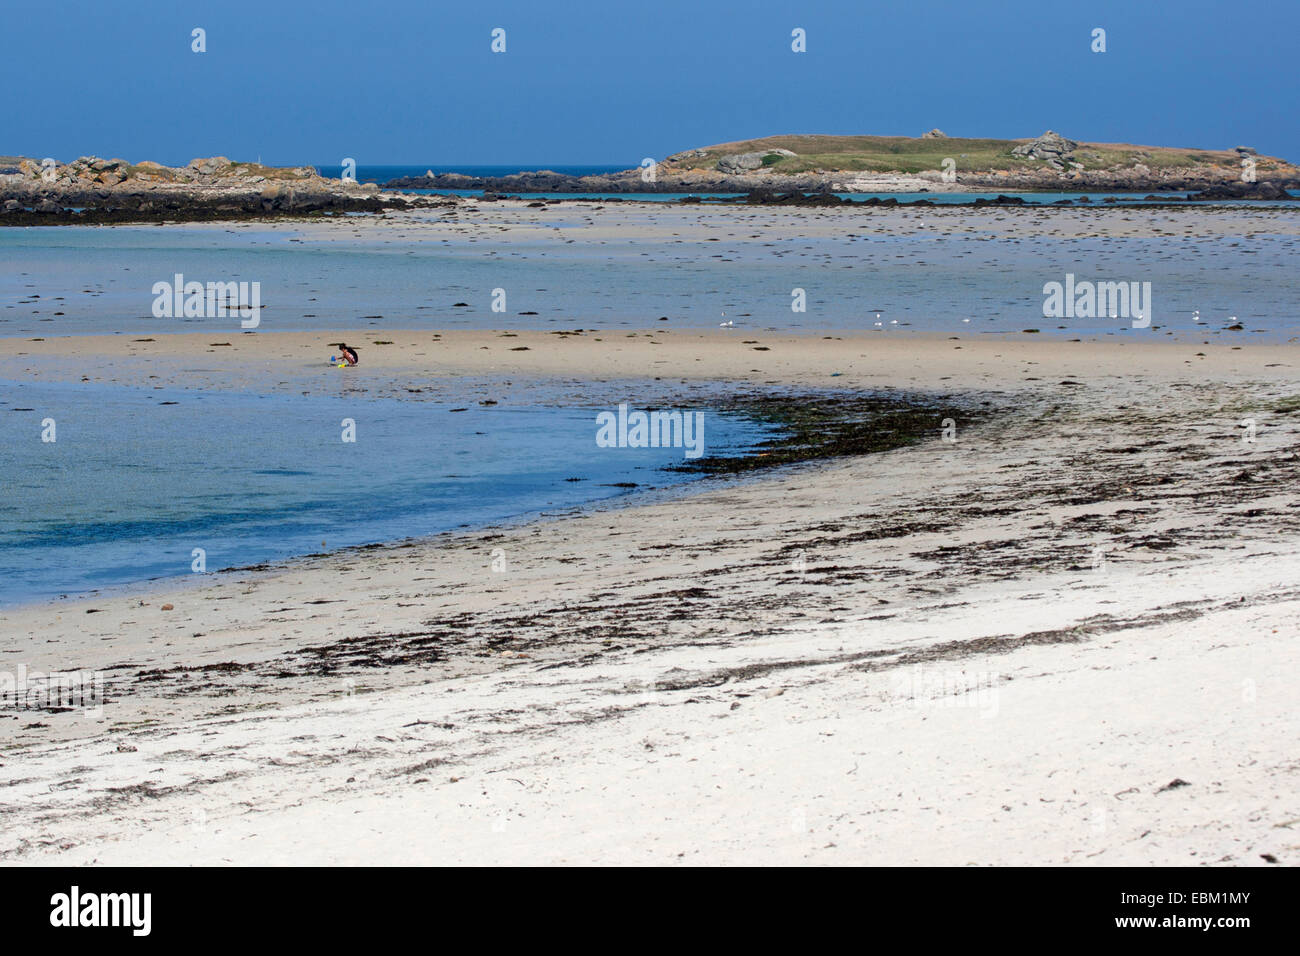 Segmento de playa en marea baja, Francia, Bretaña, Océano Atlántico Foto de stock